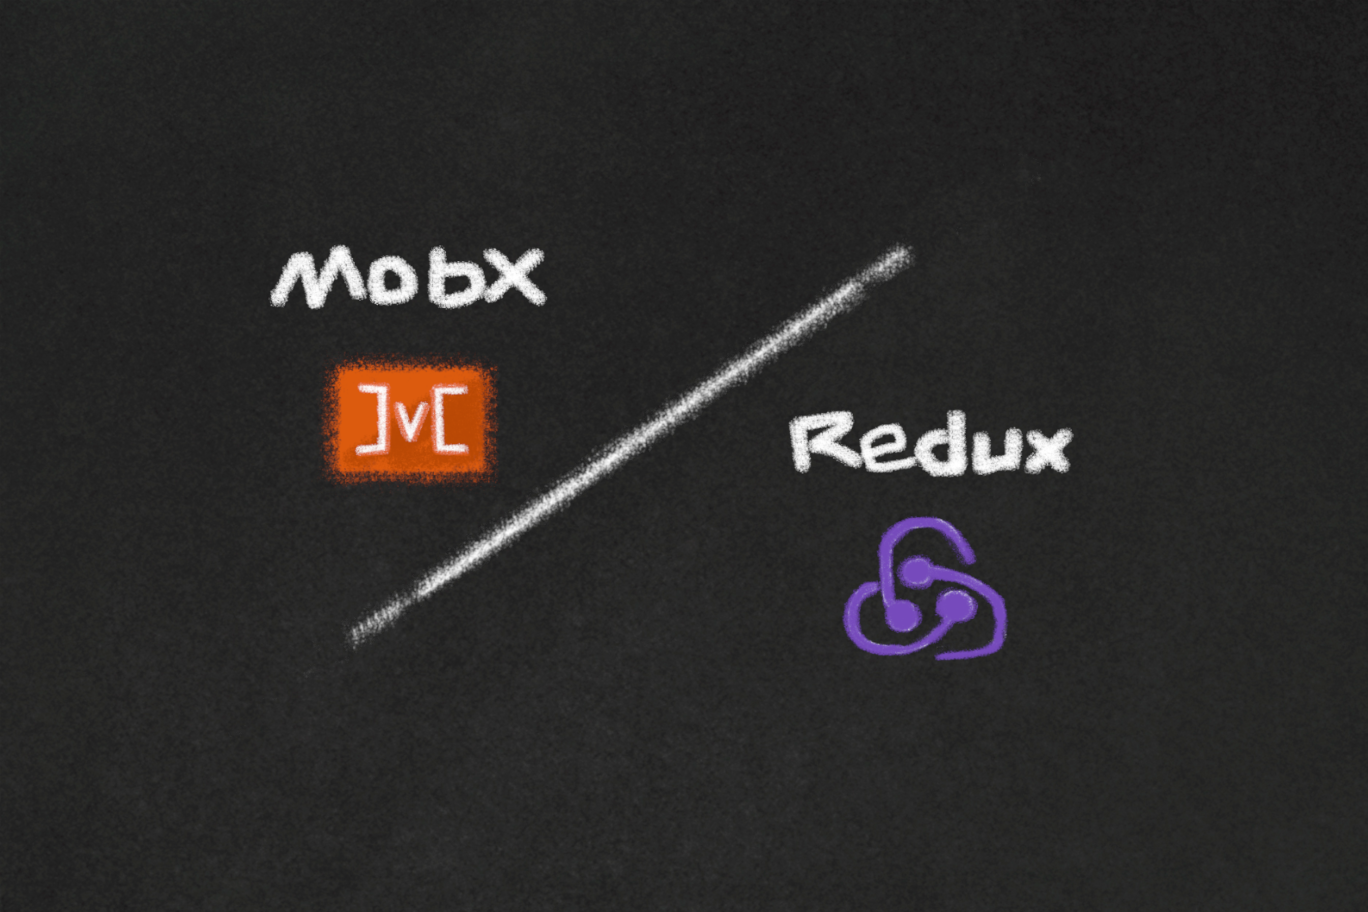 Redux ou MobX: Qual é a melhor escolha para seu projeto?